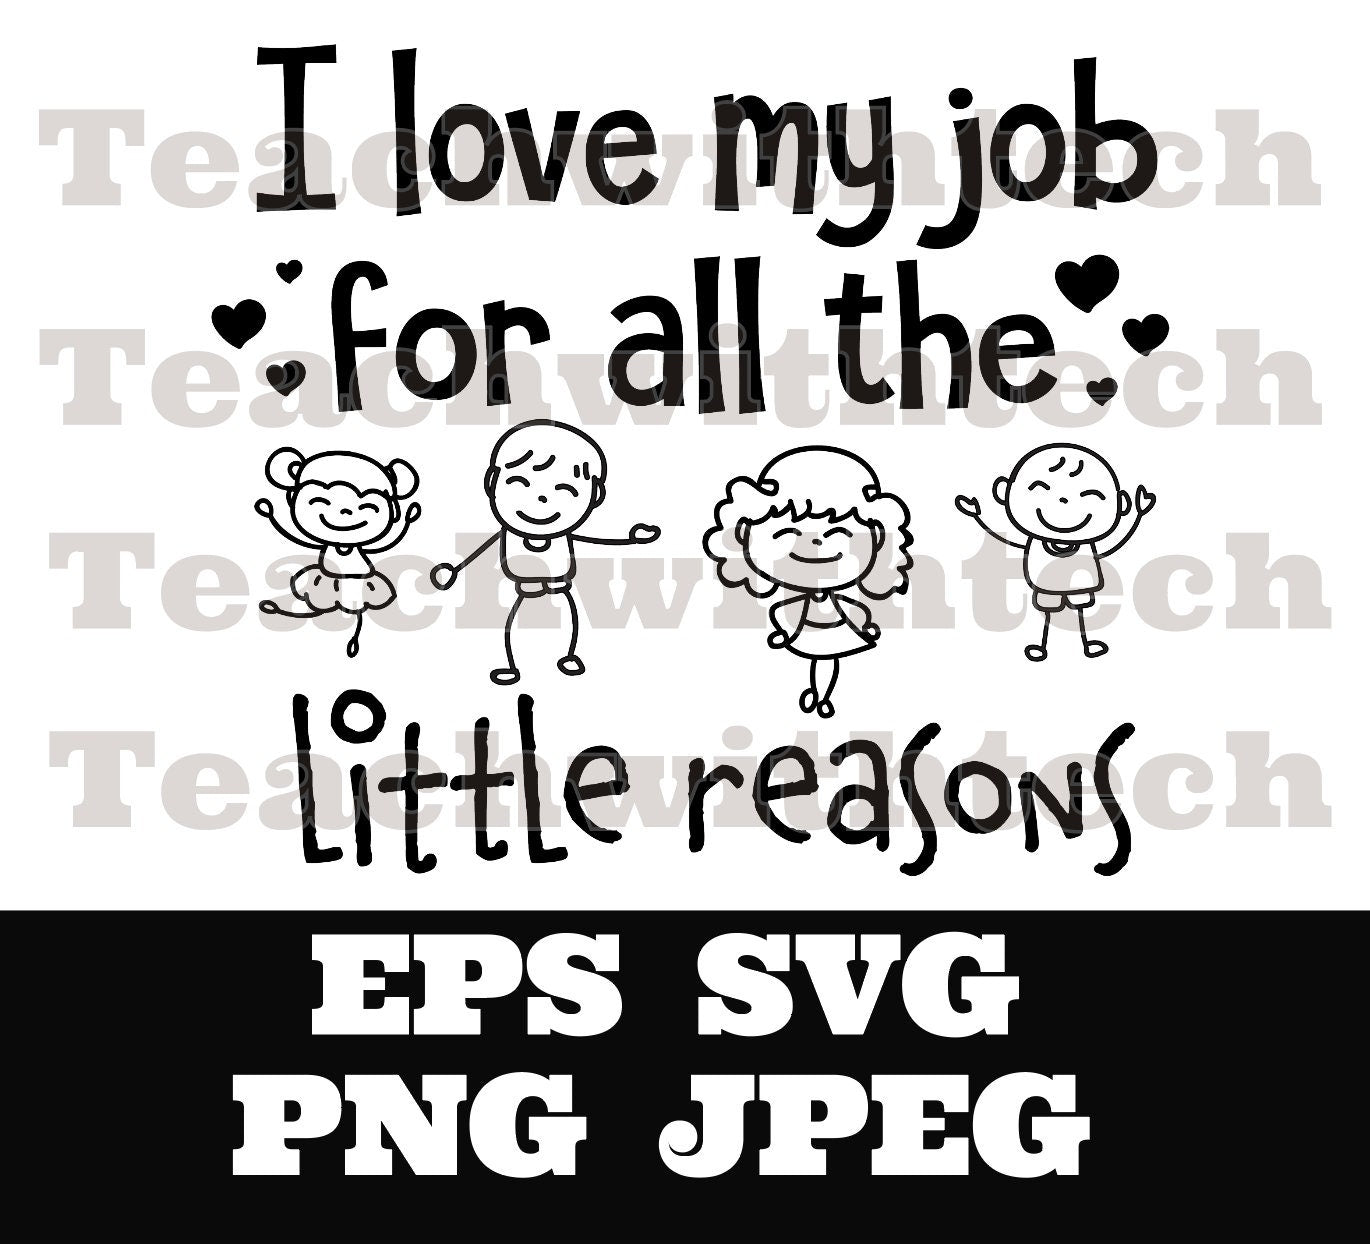 I love my job for all the little reasons SVG PNG JPEG eps Teacher Worker - Teacher T shirt cut file - cricut - silhouette - Teacher cut file